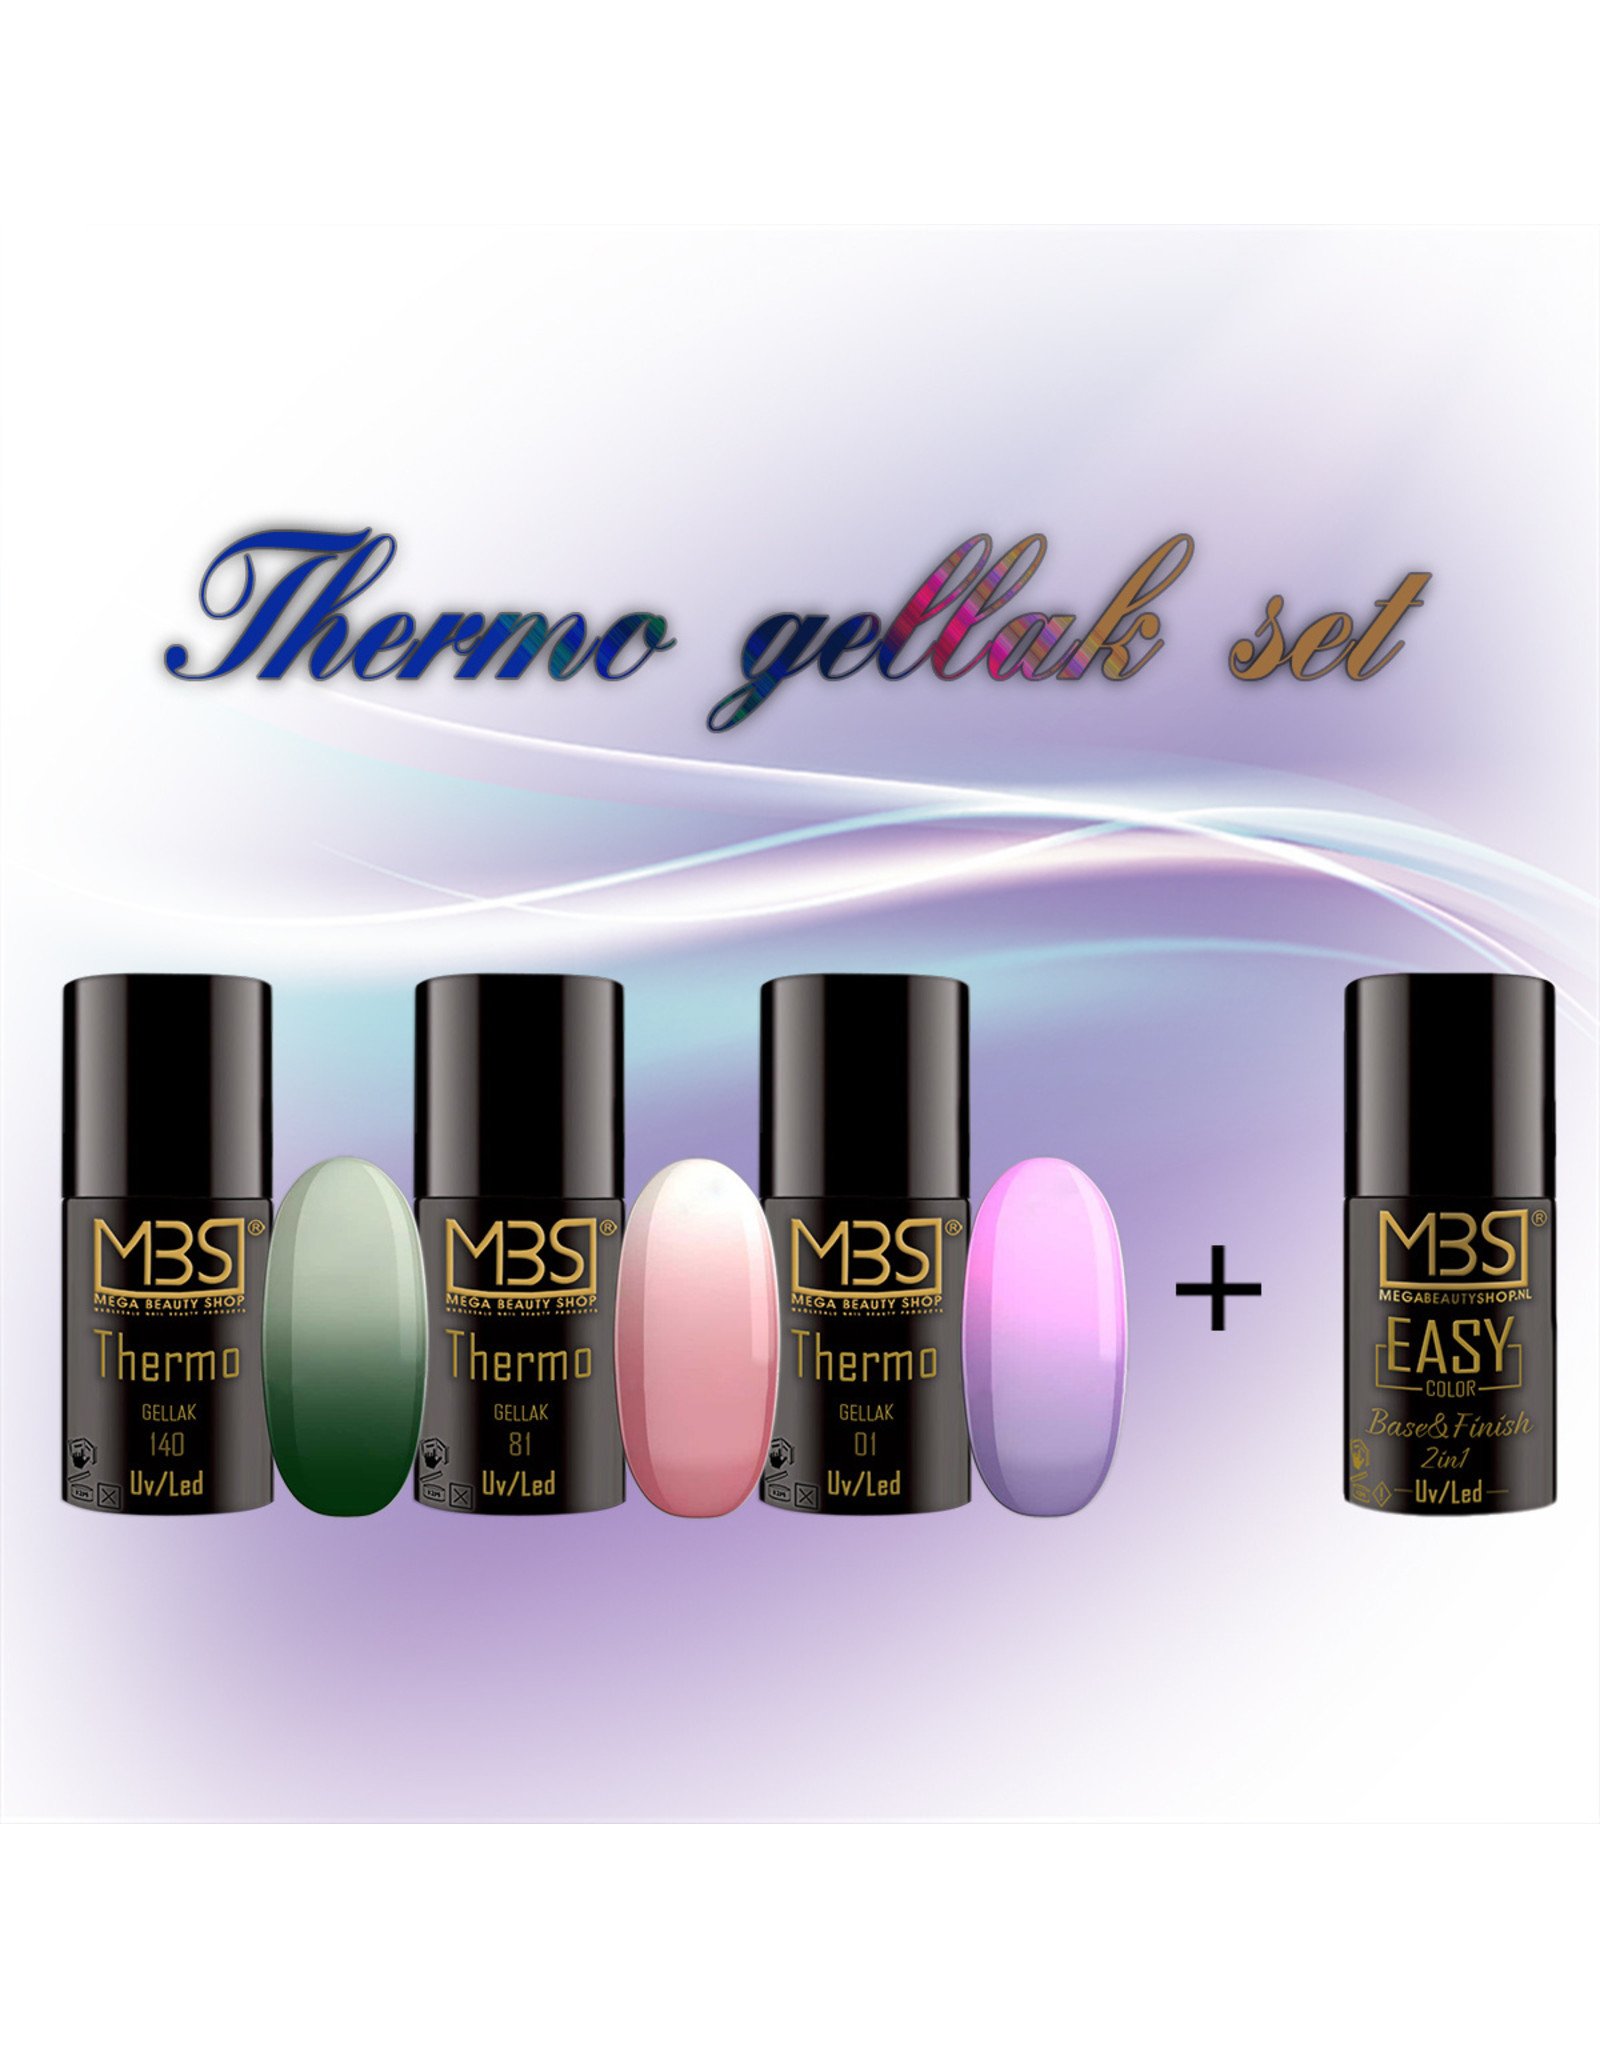 Mega Beauty Shop® Thermo gellak set met 3 kleuren + Base&Finish 2in1